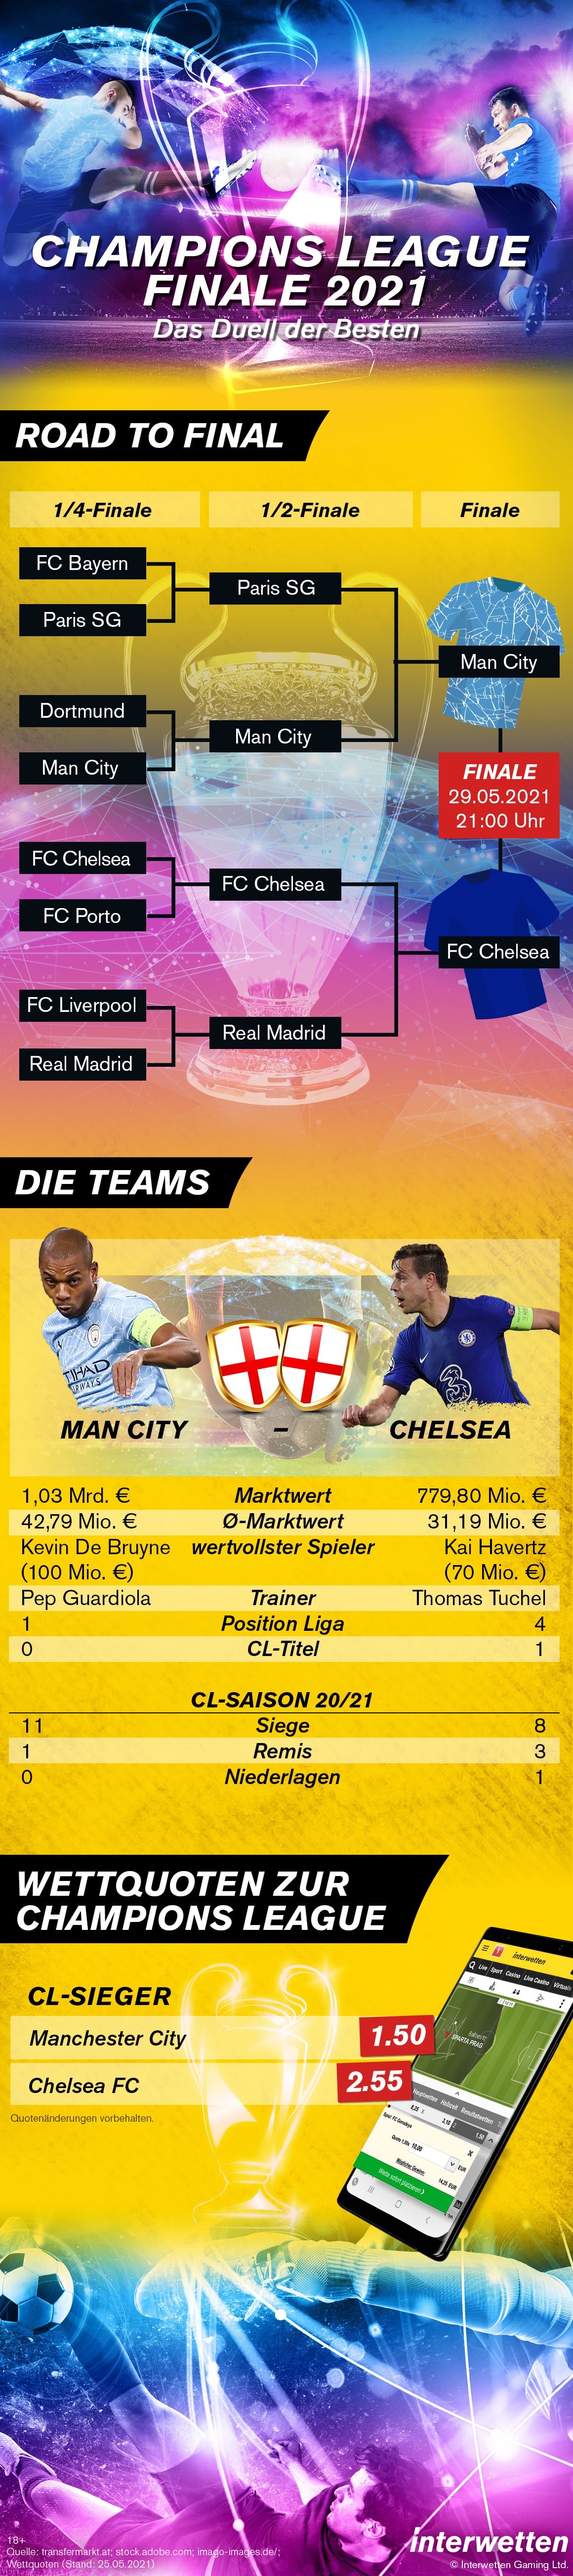 Infografik Champions League Finale 2021